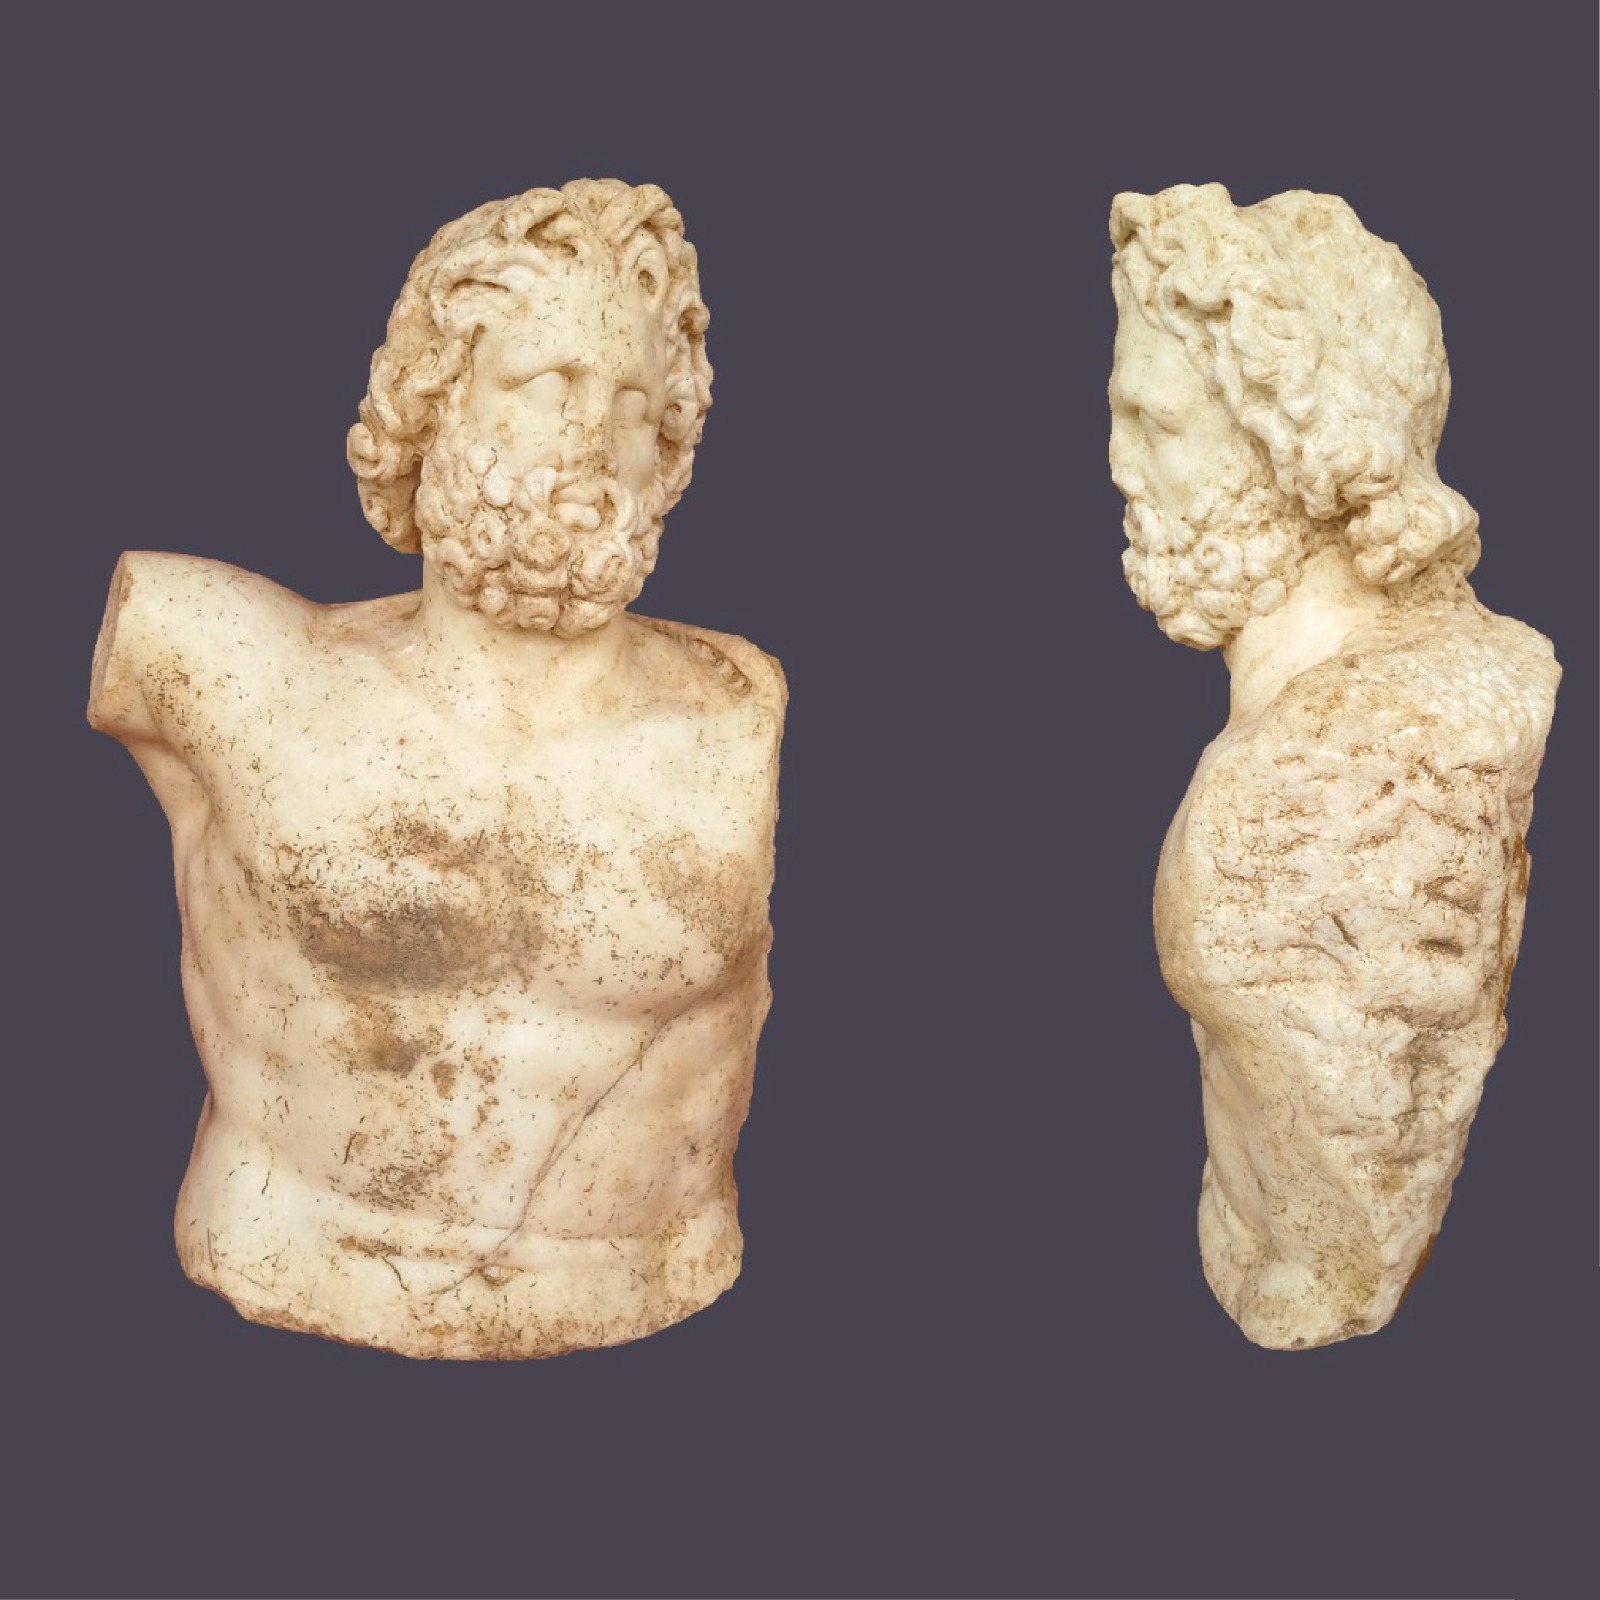 Roma İmparatorluk Dönemi’ne ait keşfedilen heykeller korunuyor